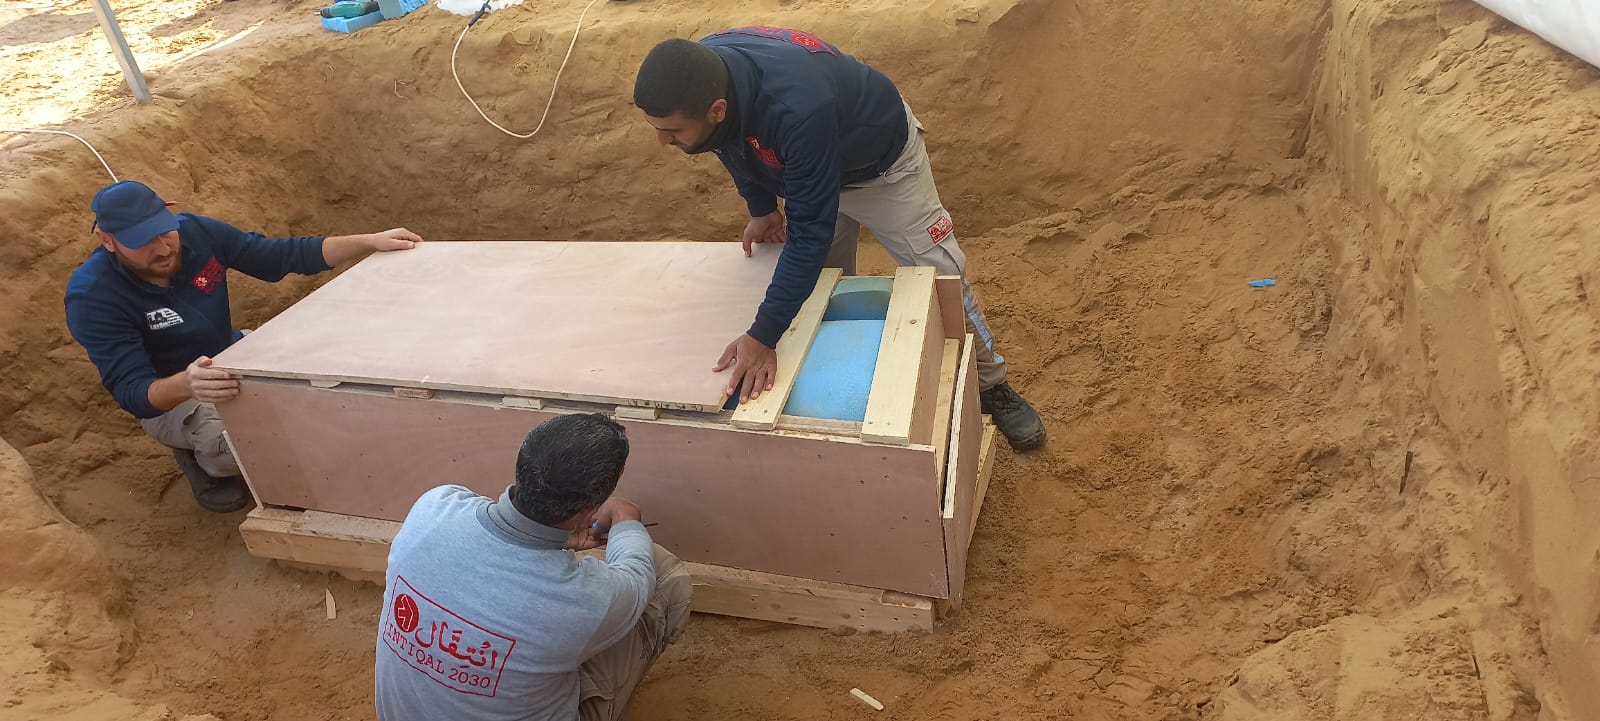 اكتشاف تابوت رصاصي في المقبرة الرومانية شمال غزة